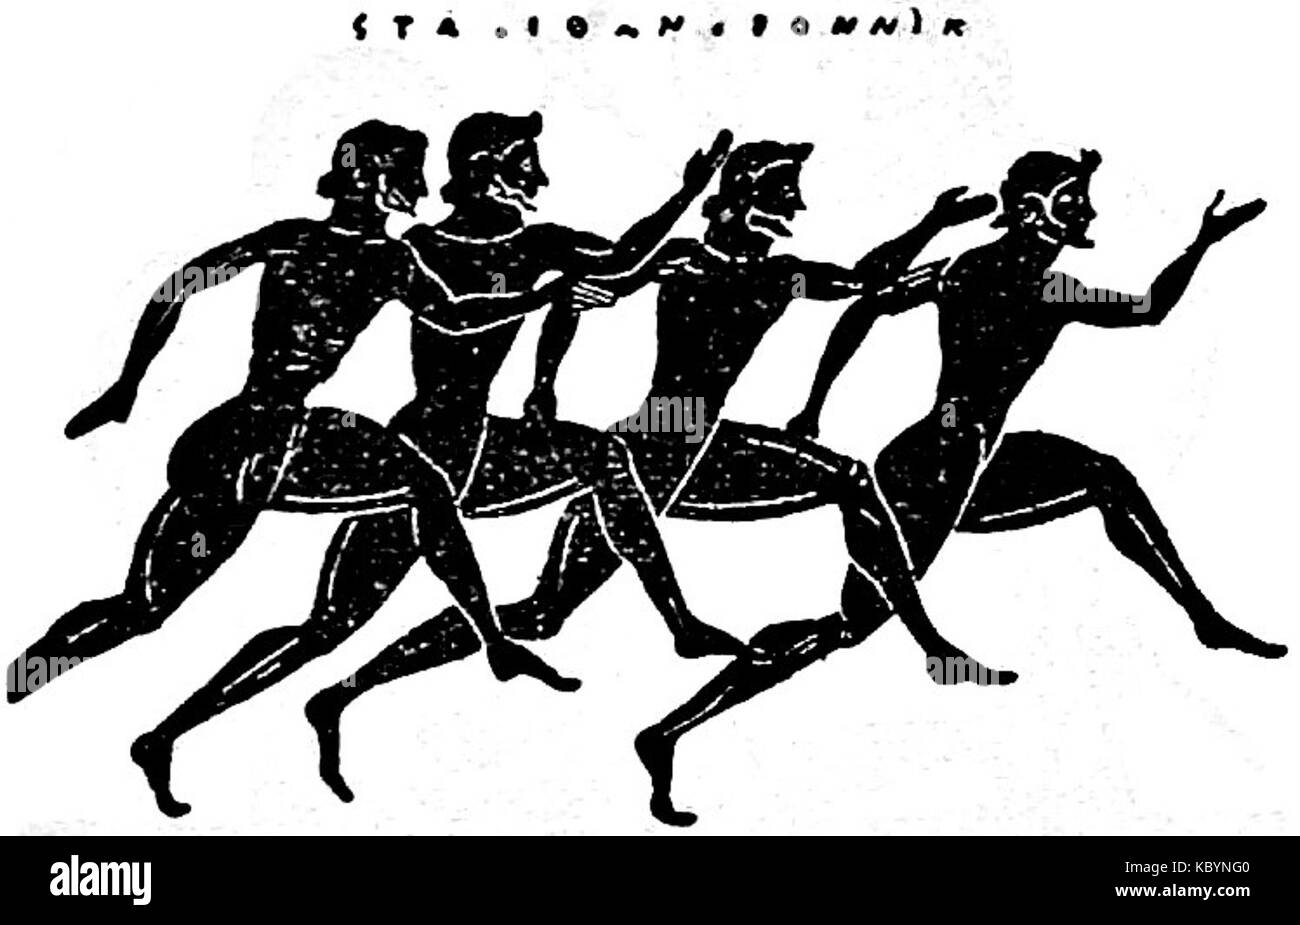 Бег на олимпийских играх в древней греции. Олимпийские игры в Греции в древности бег. Легкая атлетика в древней Греции. Бег в древней Греции на Олимпийских играх. Стадиодром в древней Греции это.